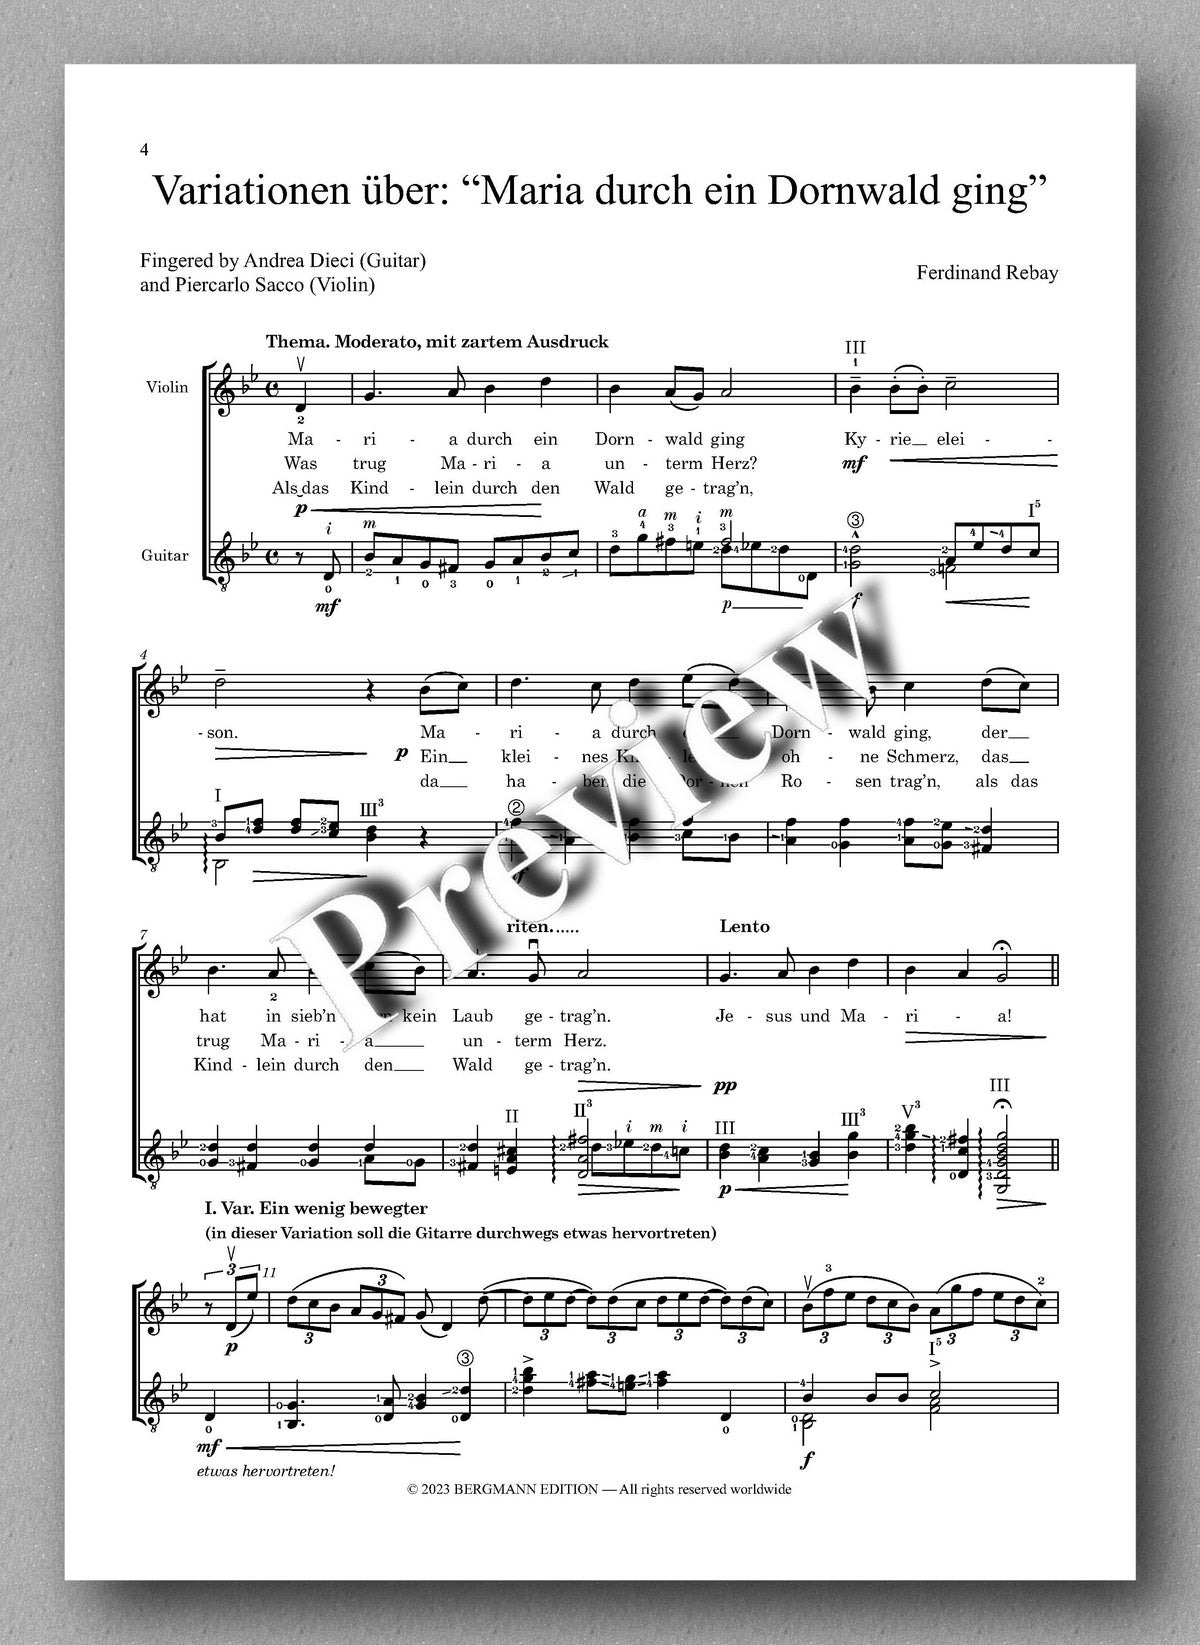 Ferdinand Rebay, Variationen über: “Maria durch ein Dornwald ging” - preview of the music score 1